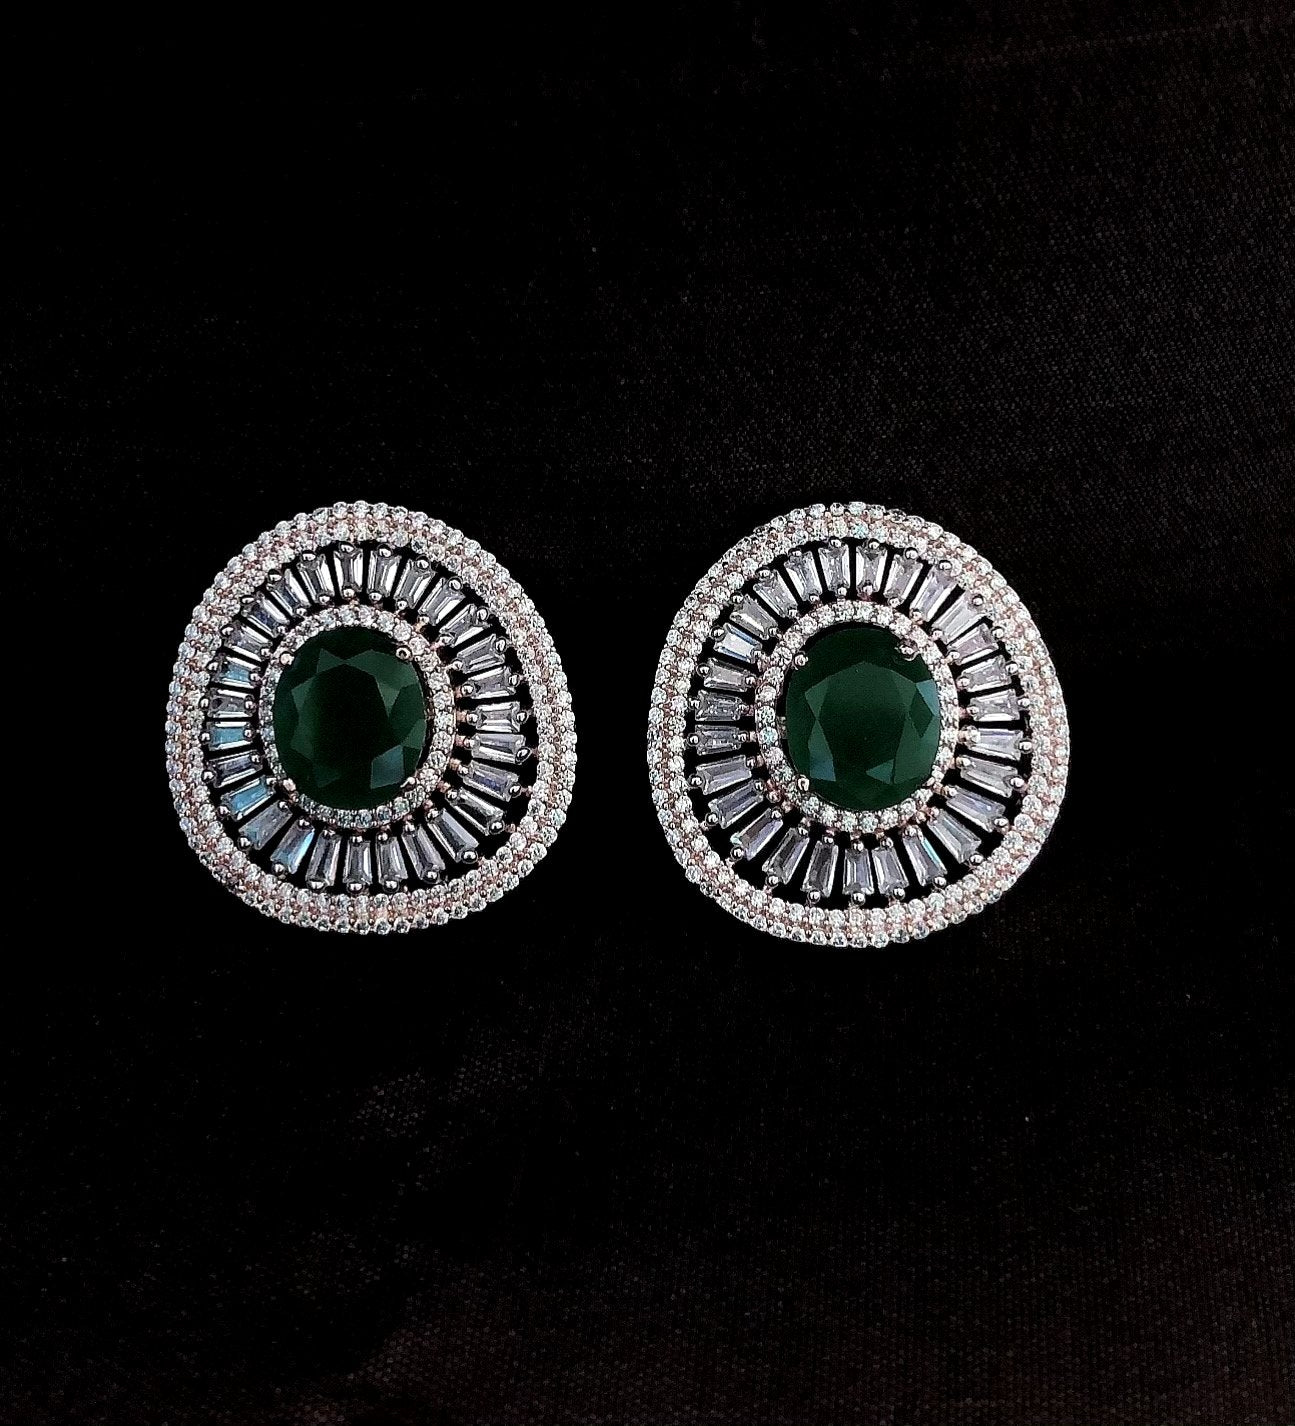 Emerald Green Diamond Stud Earrings